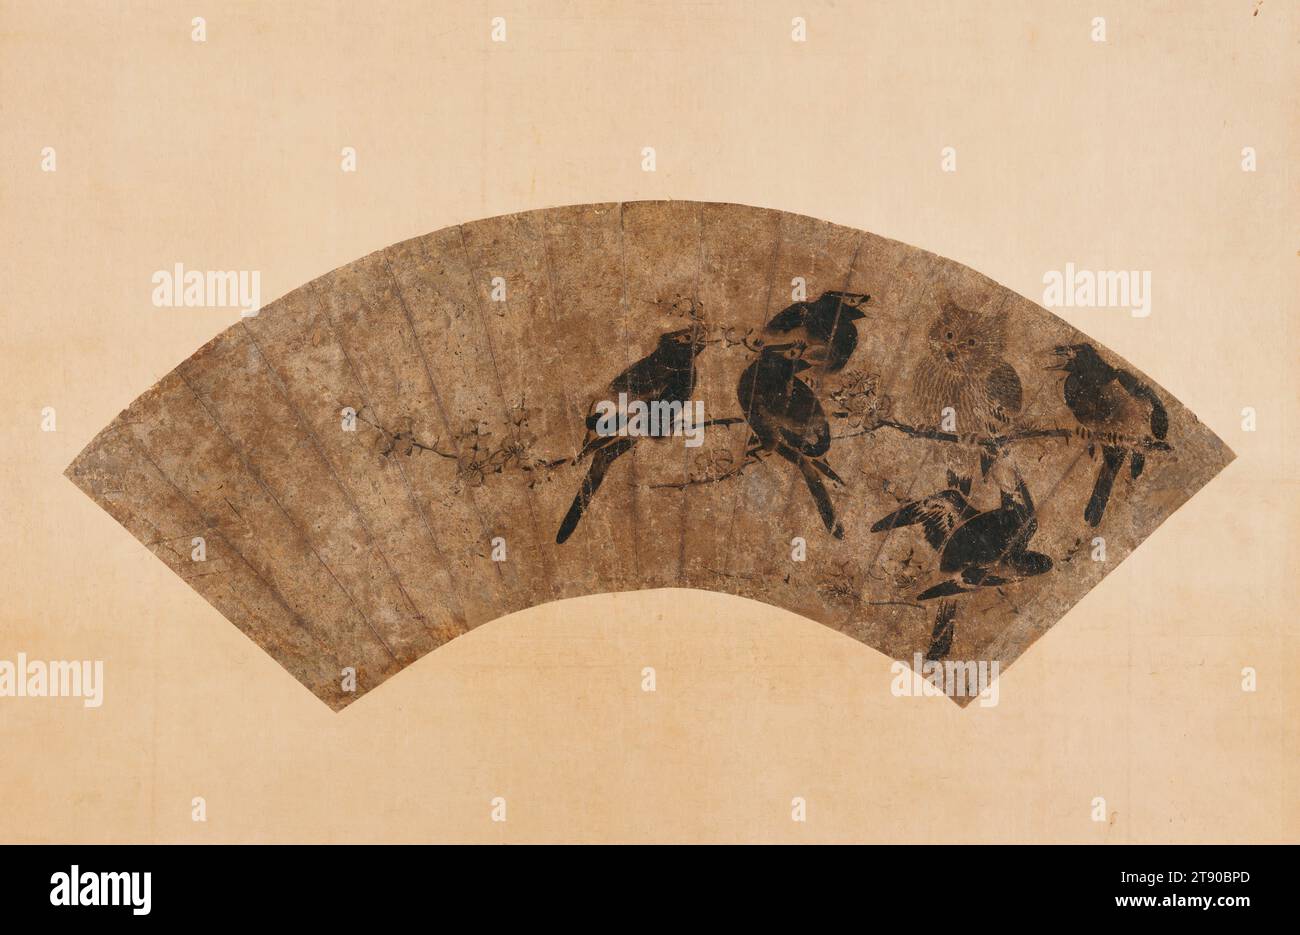 Owl and Crested Mynas on a Plum Branch, XIV - XVI secolo, sconosciuto giapponese, 8 5/8 x 20 poll. (21,91 x 50,8 cm) (immagine)54 9/16 x 26 7/8" (138,59 x 68,26 cm) (montaggio, senza rullo)14 1/2 x 22 1/8" (36,83 x 56,2 cm) (montaggio, montaggio interno), inchiostro su carta, Giappone, XIV-XVI secolo, la combinazione di un gufo con stormi di mynas o corvi crestati, sia uccelli rumorosi che torbidi, appare su una serie di dipinti a inchiostro a partire dagli anni '1500 In questo dipinto, cinque raucosi mynas crestate (un tipo di starling nativo della Cina) circondano uno stoico gufo intento a riposare su un ramo di prugna in fiore. Foto Stock